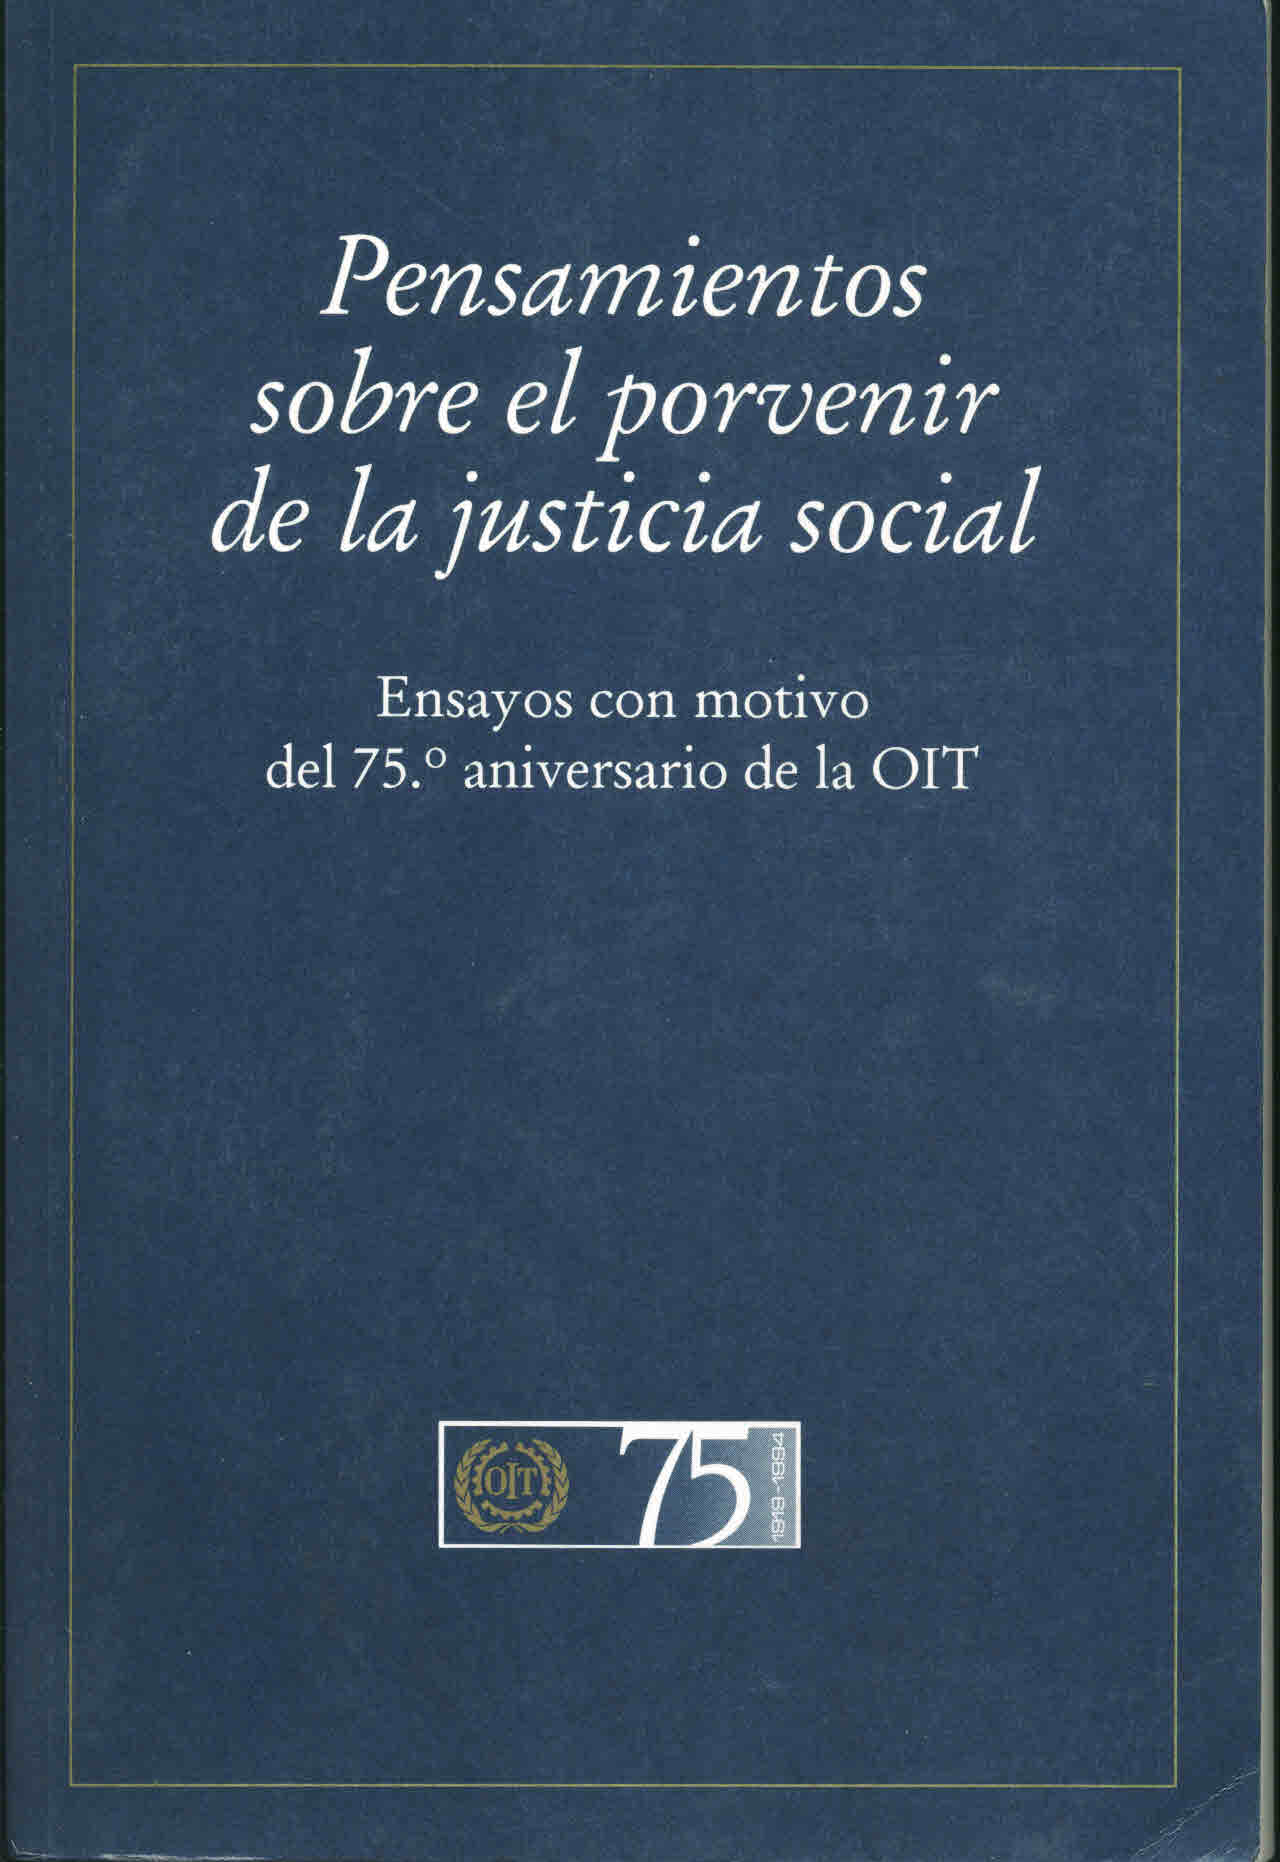 Pensamiento sobre el provenir de la justicia social: Ensayos con motivo del 75o aniversario de la OIT